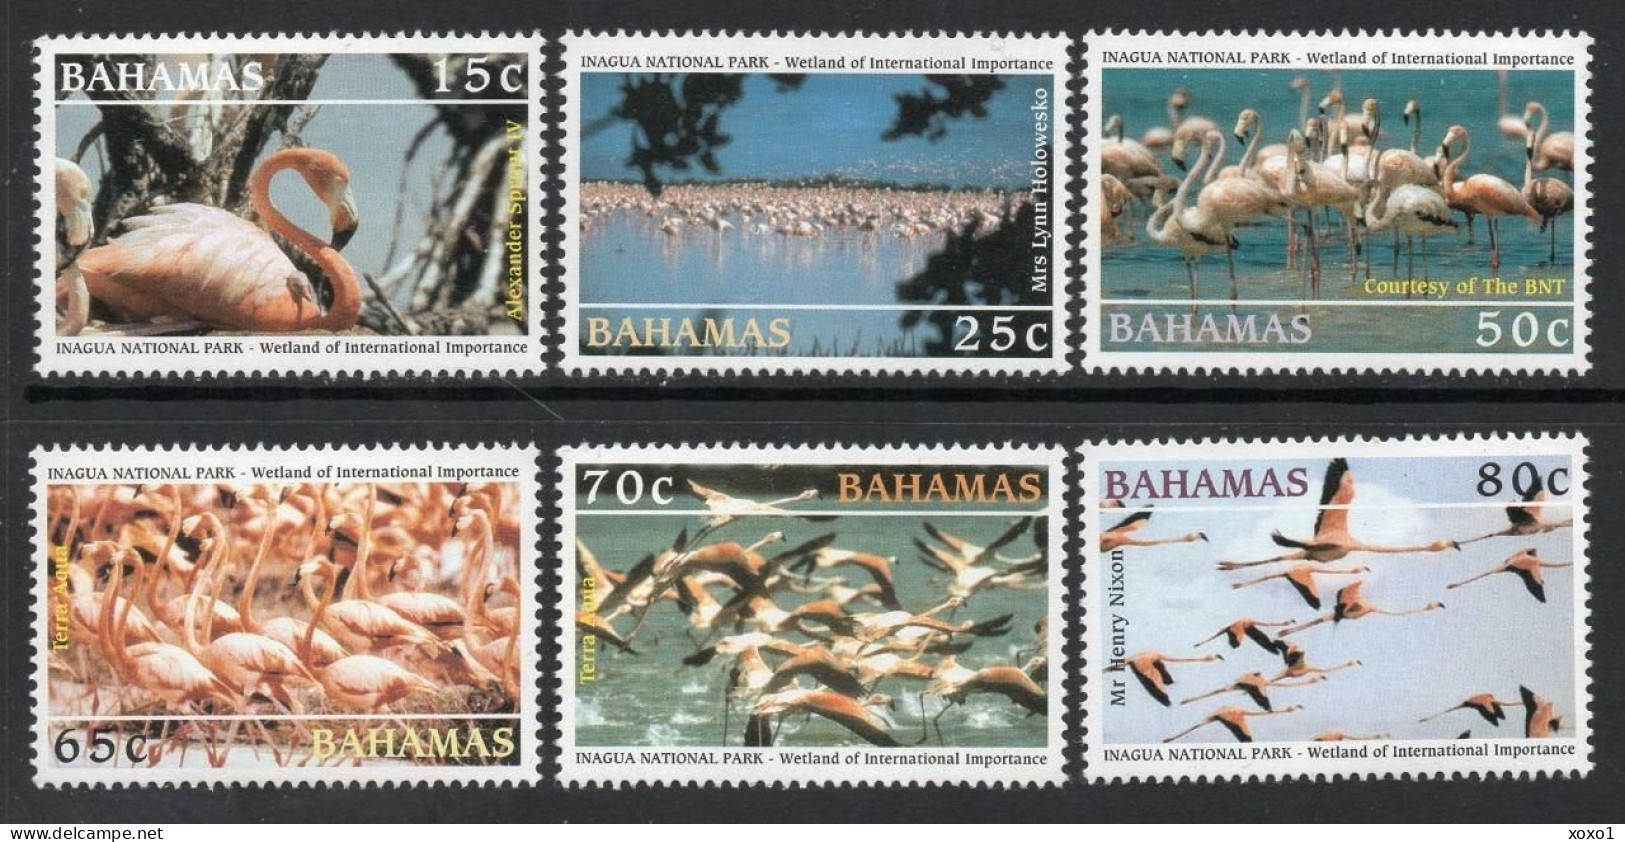 Bahamas 2003 MiNr. 1129 - 1134  Birds American Flamingo Inagua National Park 6v MNH** 9.00 € - Fenicotteri